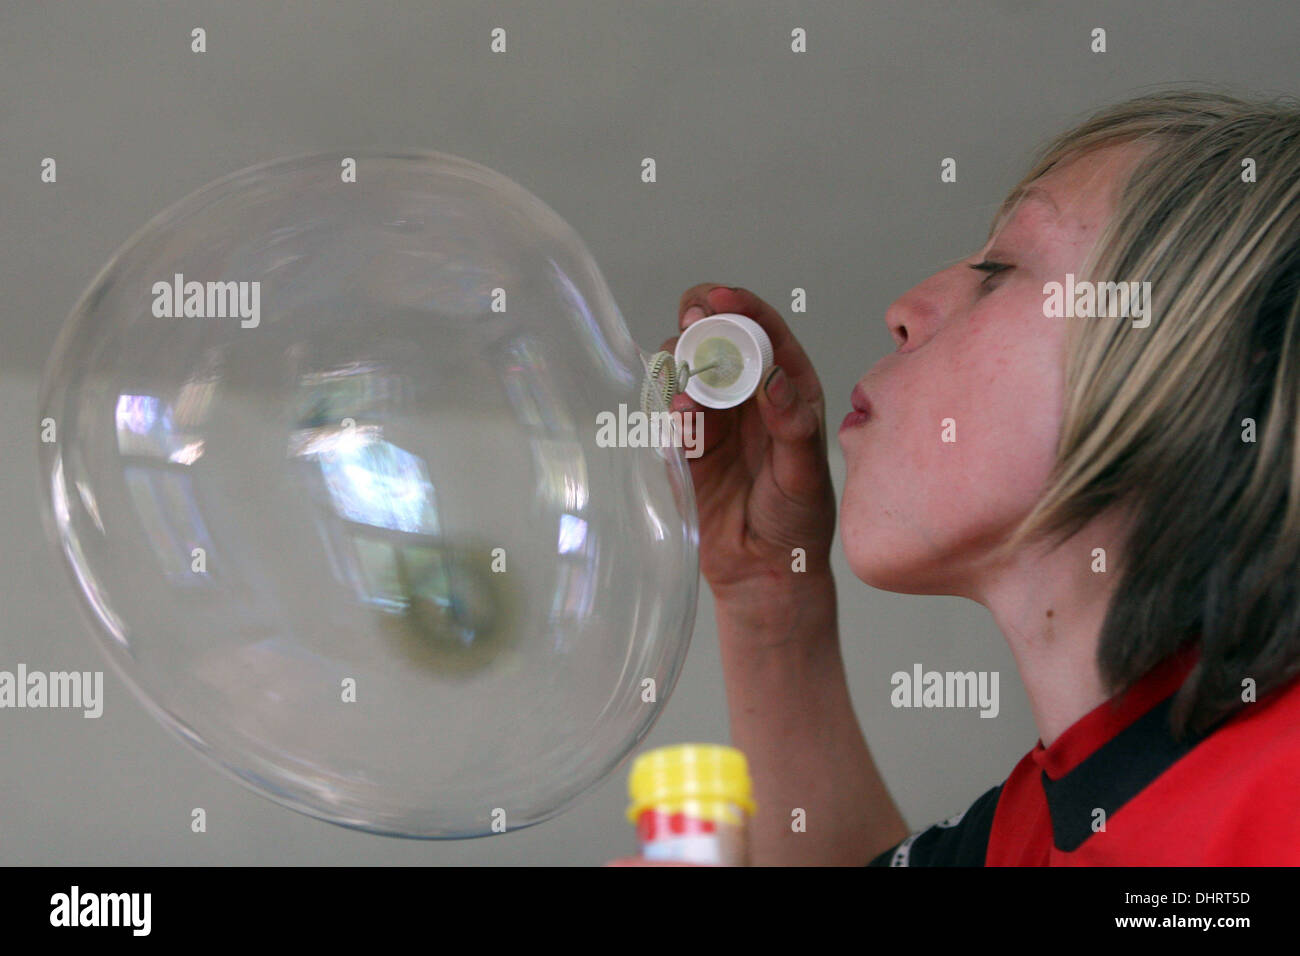 Jeune garçon soufflant de bulles, souffleur de bulles Banque D'Images